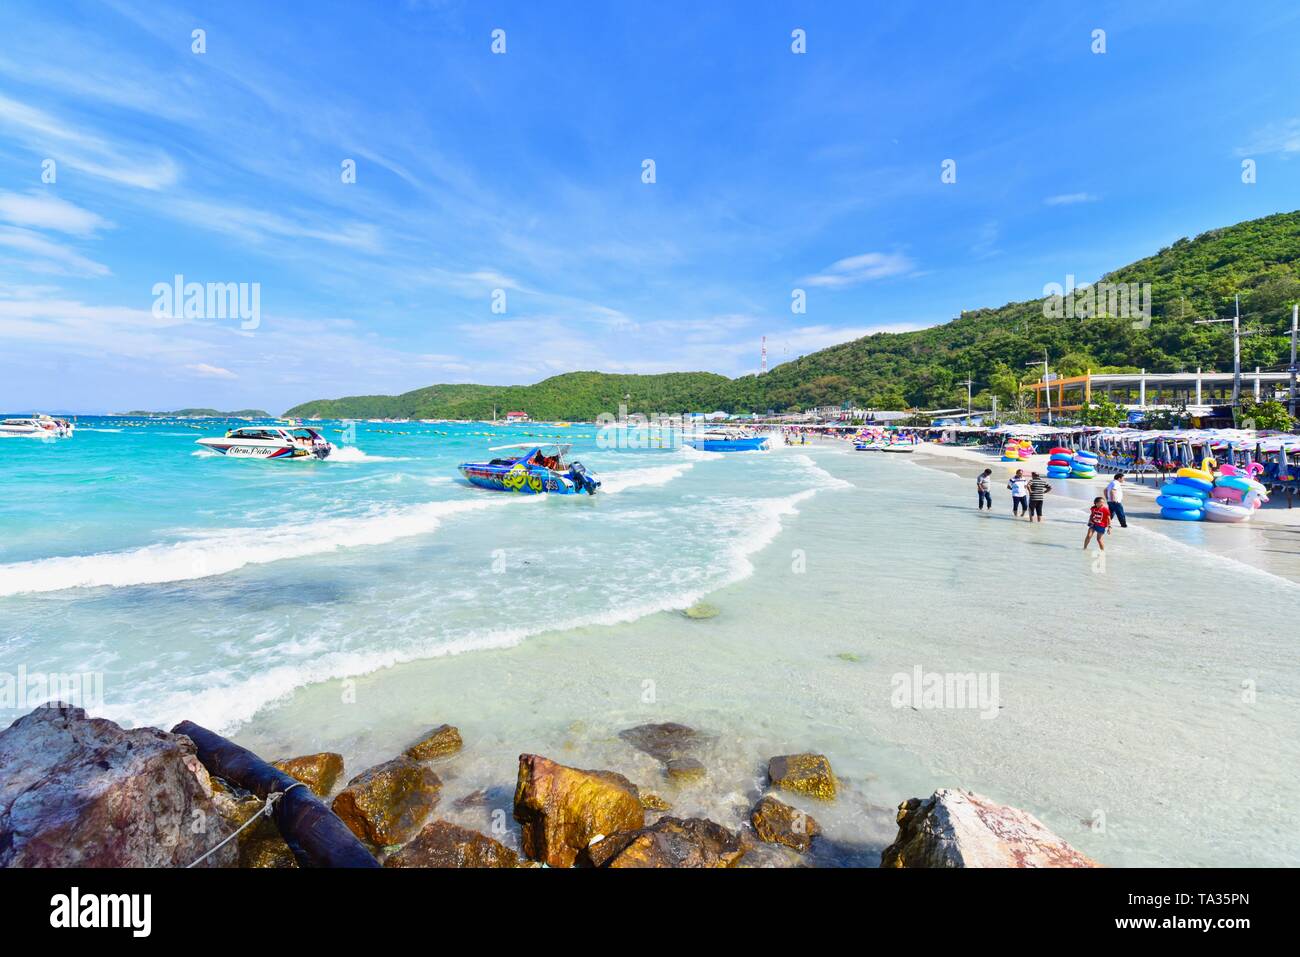 Motoscafi turistici sulle acque blu turchese di Kho Larn in Pattaya Foto Stock